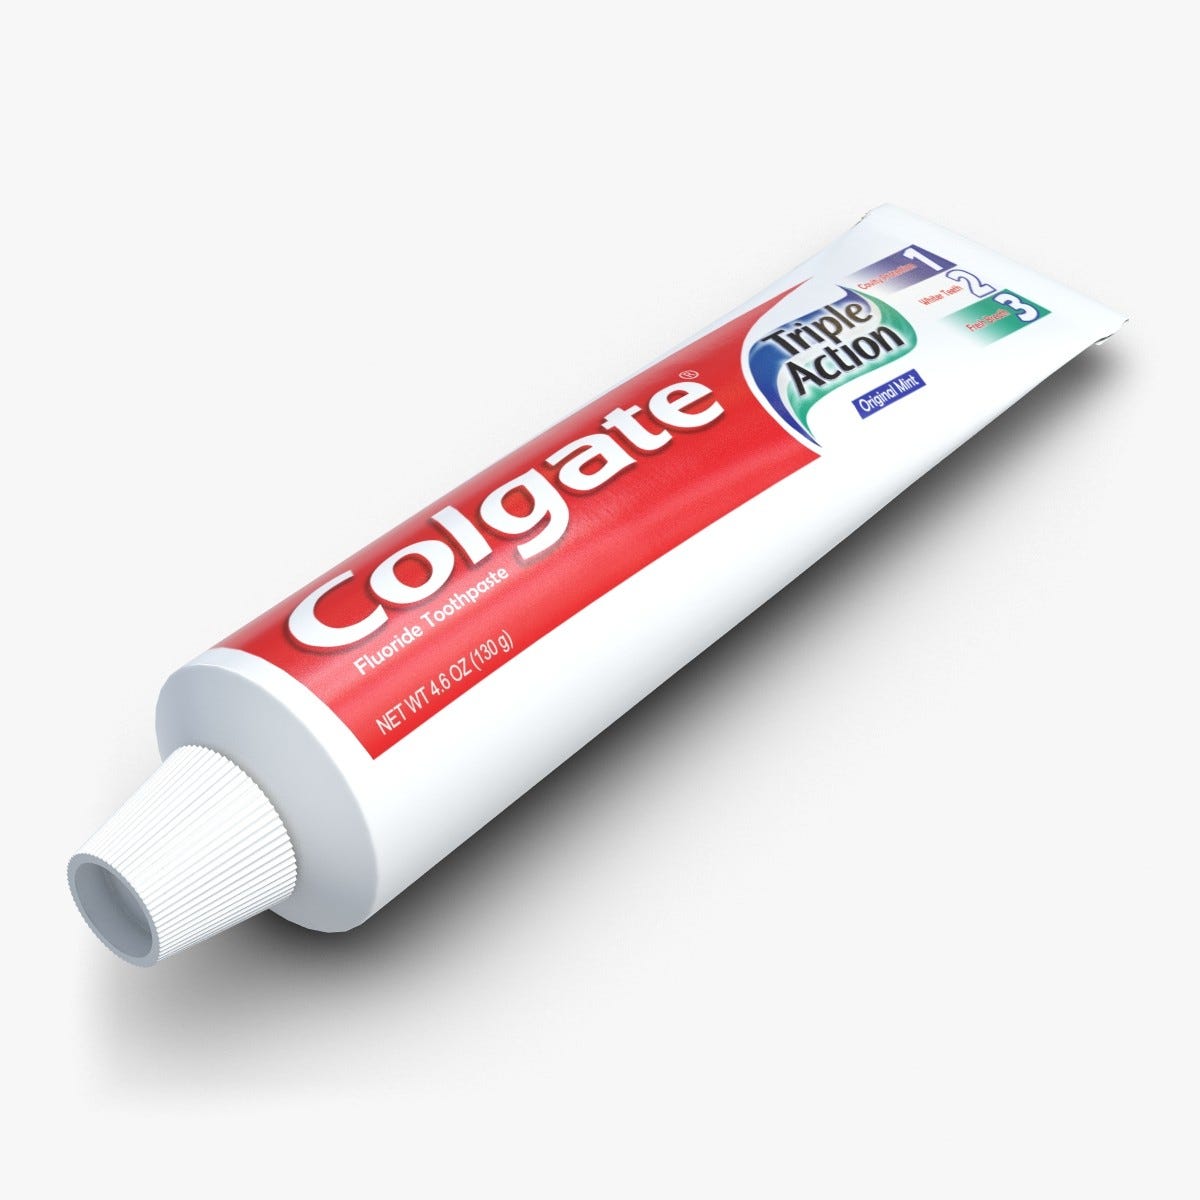 Тюбики для детей. Тюбик зубной пасты Колгейт. Зубная паста Toothpaste. Паста Колгейт тюбик. Изображение тюбика пасты.